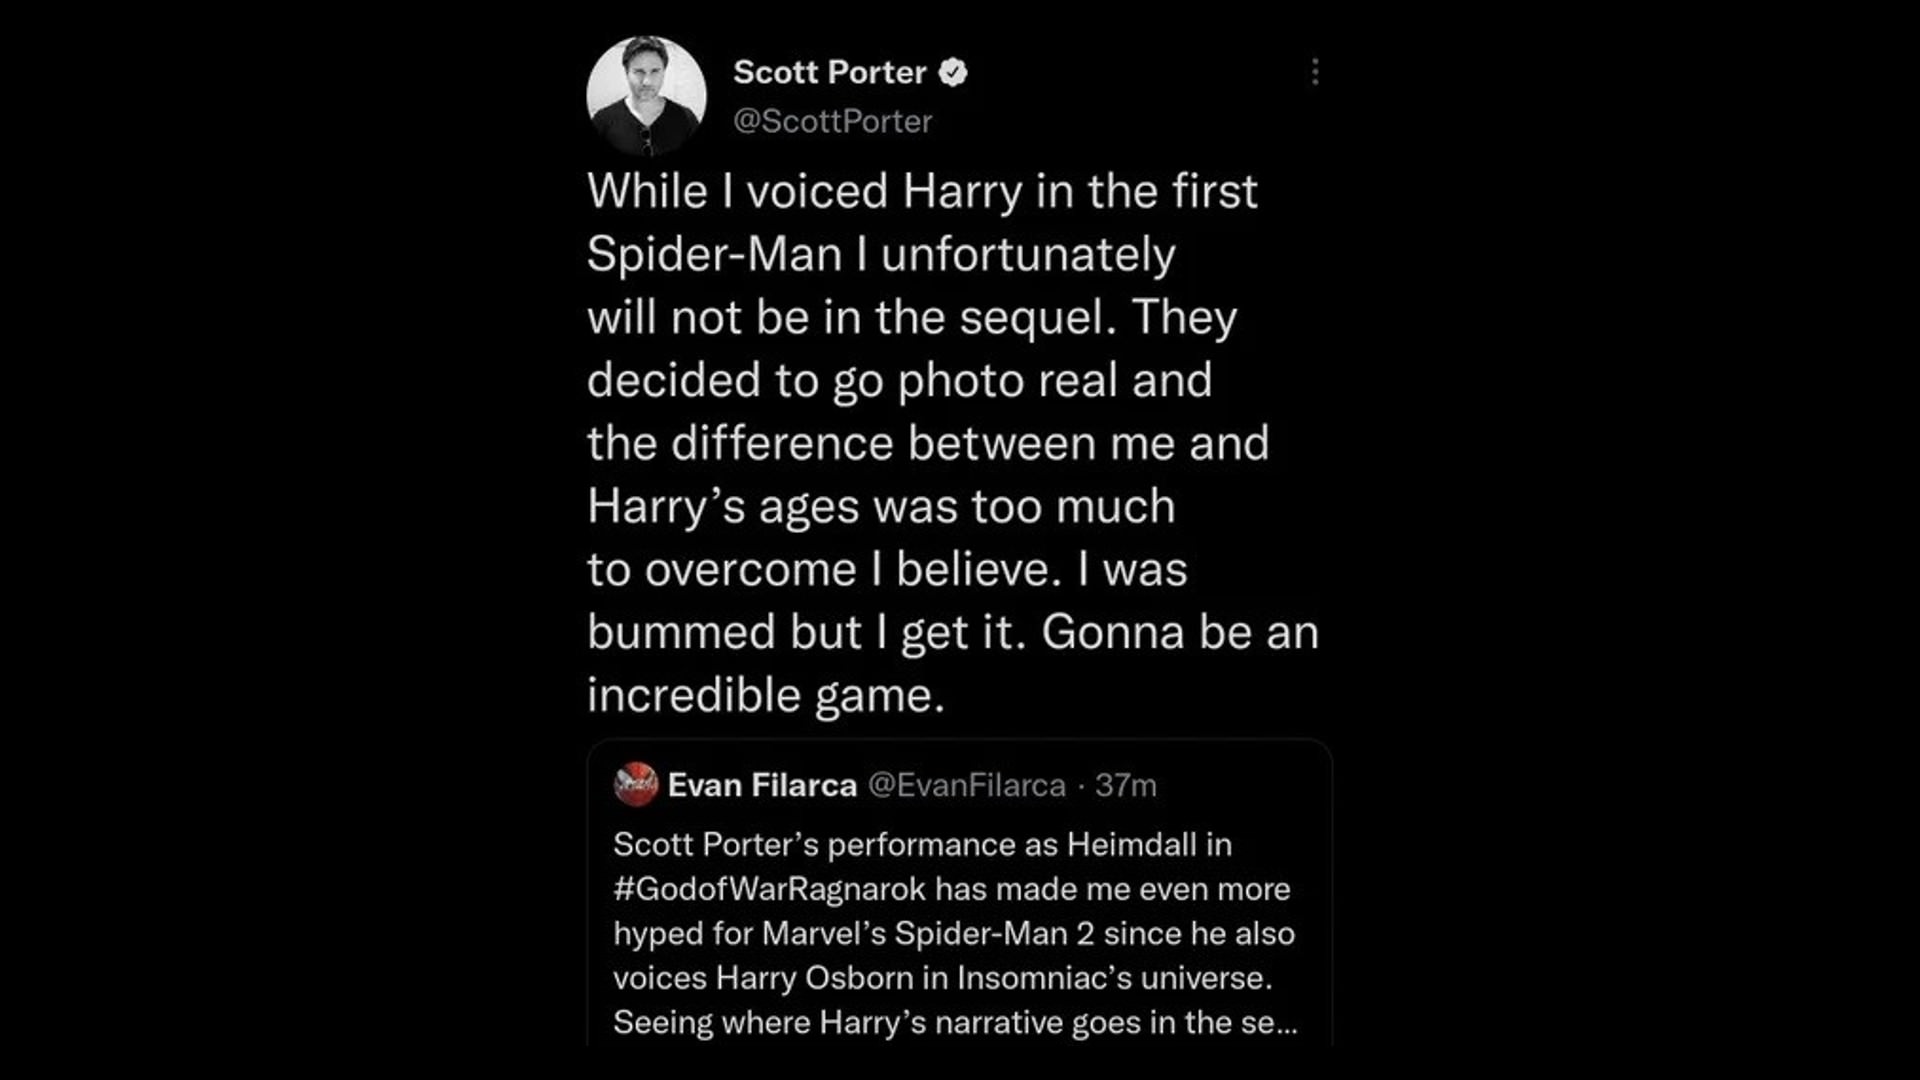 توییت حذف شده اسکات پورتر درباره هری آزبورن در Marvel's Spider-Man 2